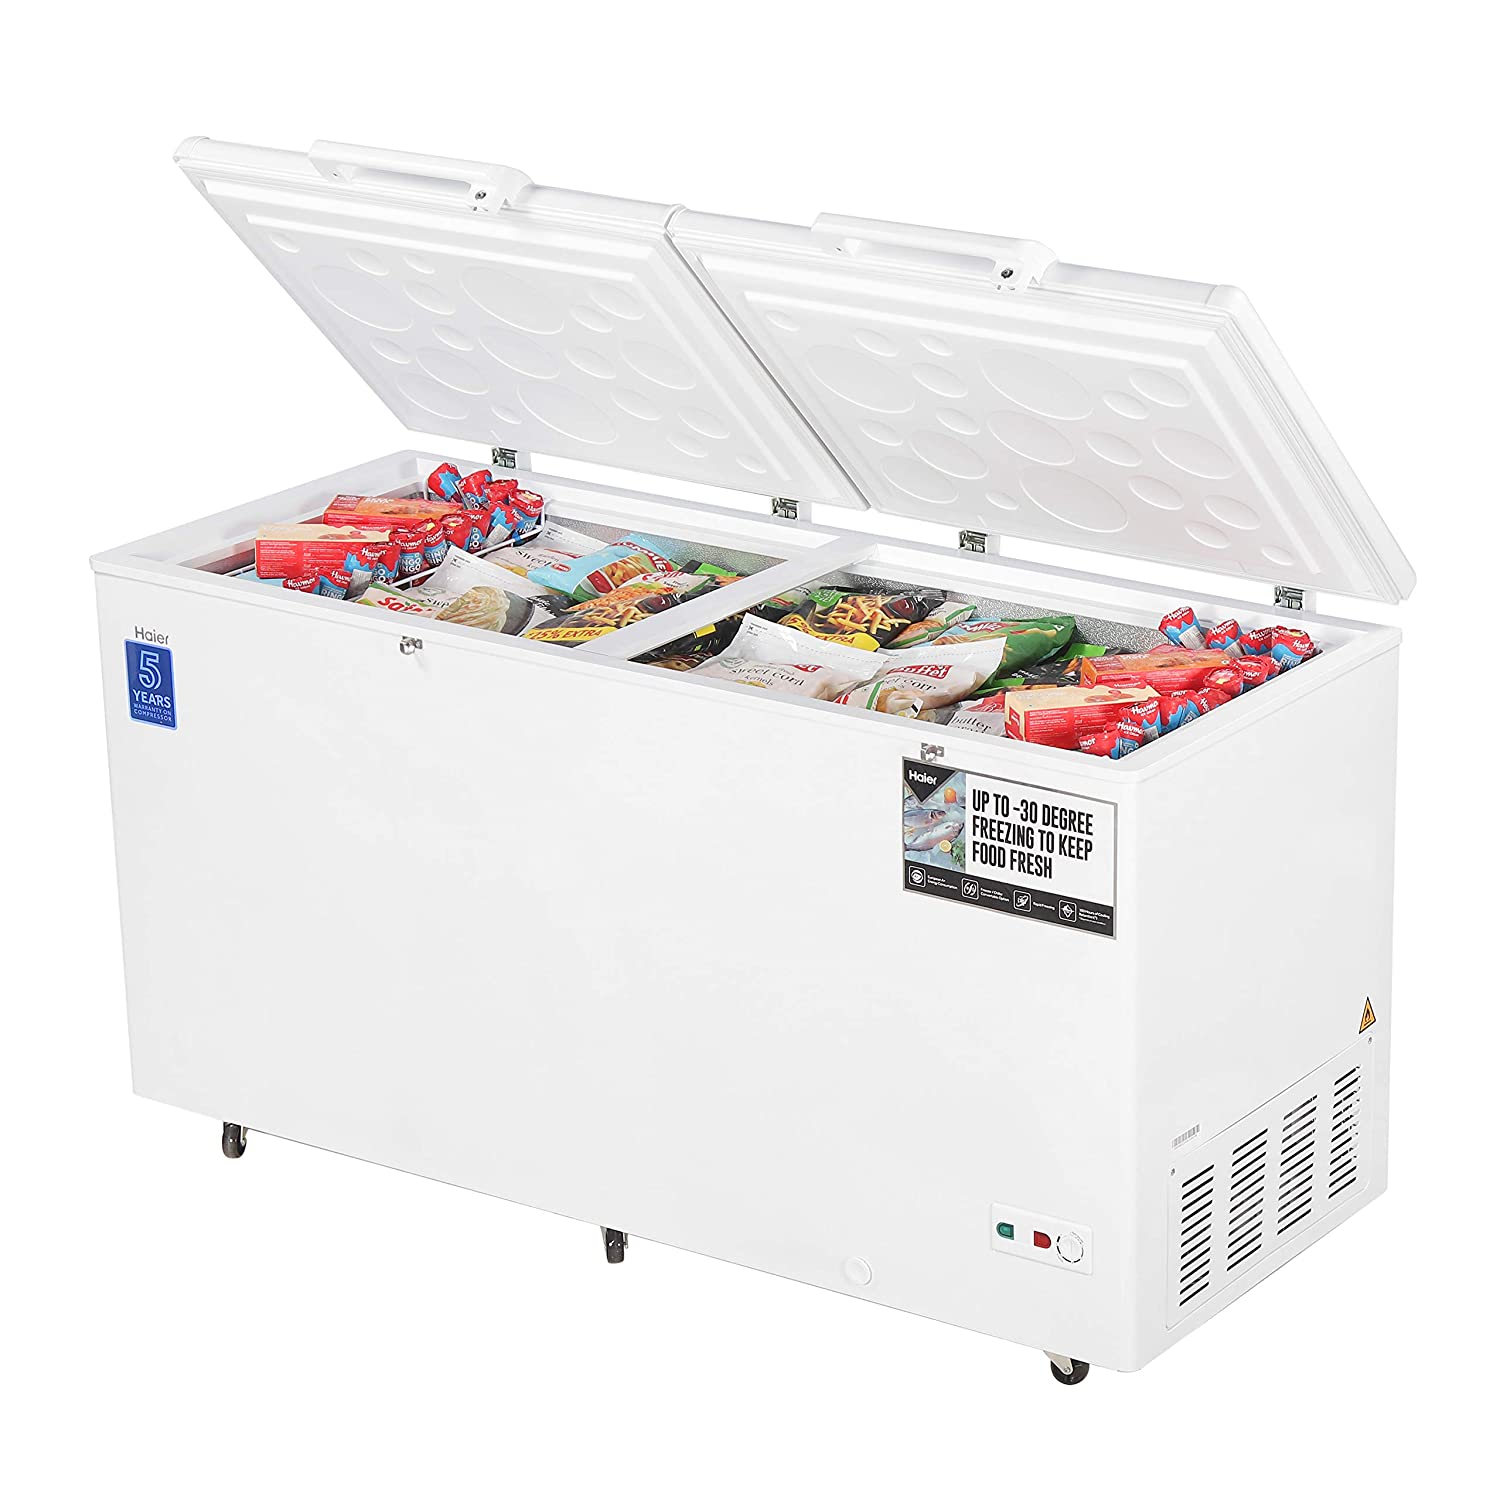 Haier HCC-460HC Deep Freezer Double Door Hard Top Convertible, 429 liters, White